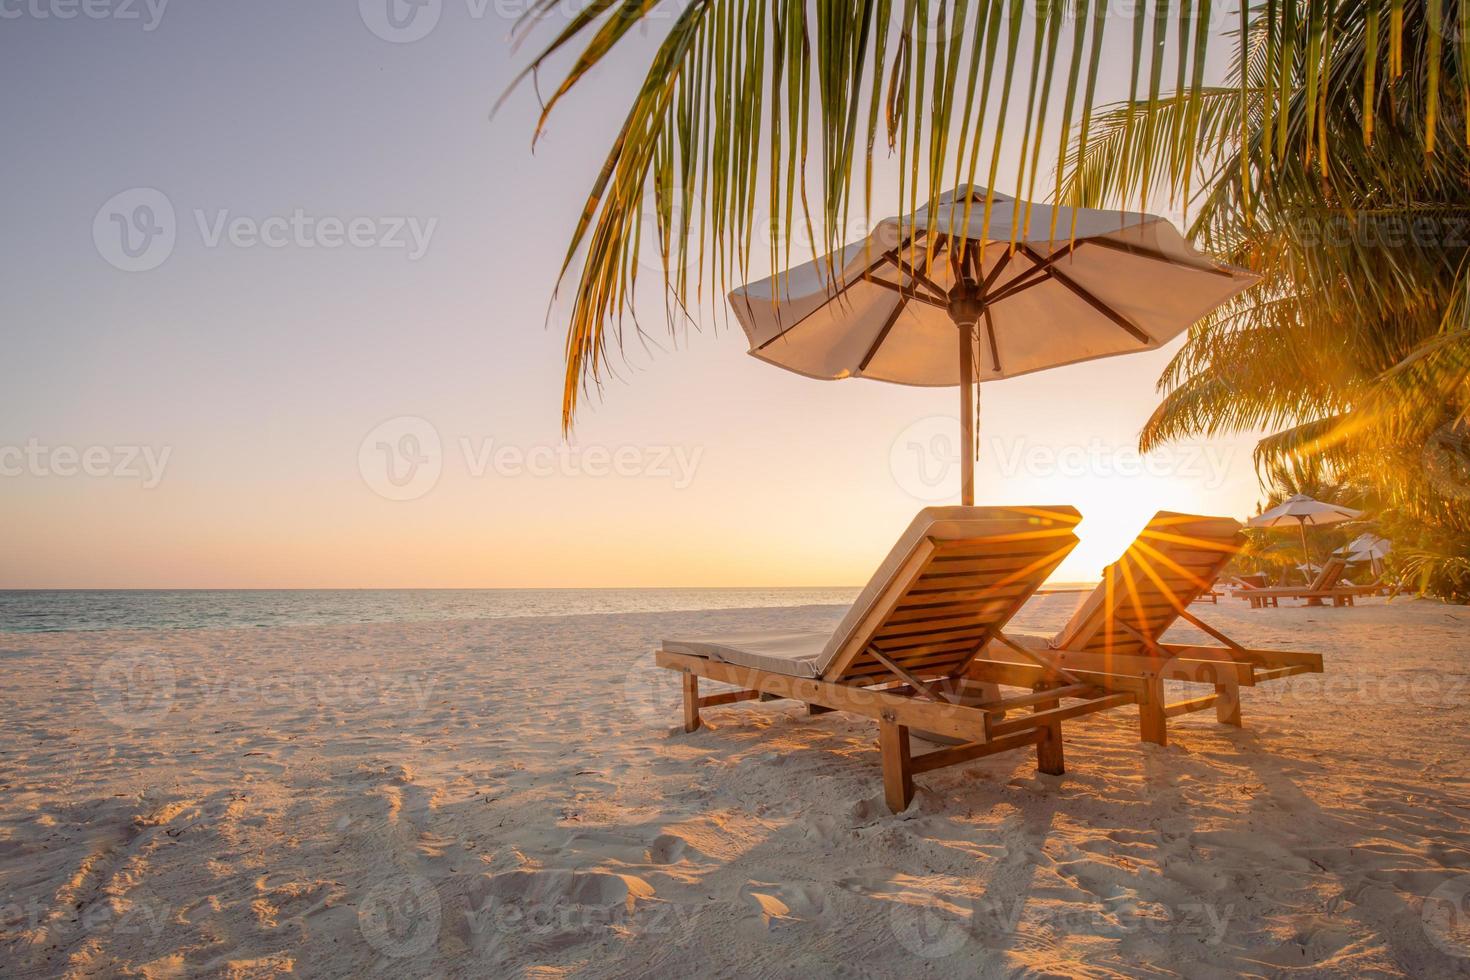 wunderschöne tropische Sonnenuntergangslandschaft, zwei Sonnenliegen, Liegestühle, Sonnenschirm unter Palmen. weißer Sand, Meerblick mit Horizont, bunter Dämmerungshimmel, Ruhe und Entspannung. inspirierendes Strandresorthotel foto